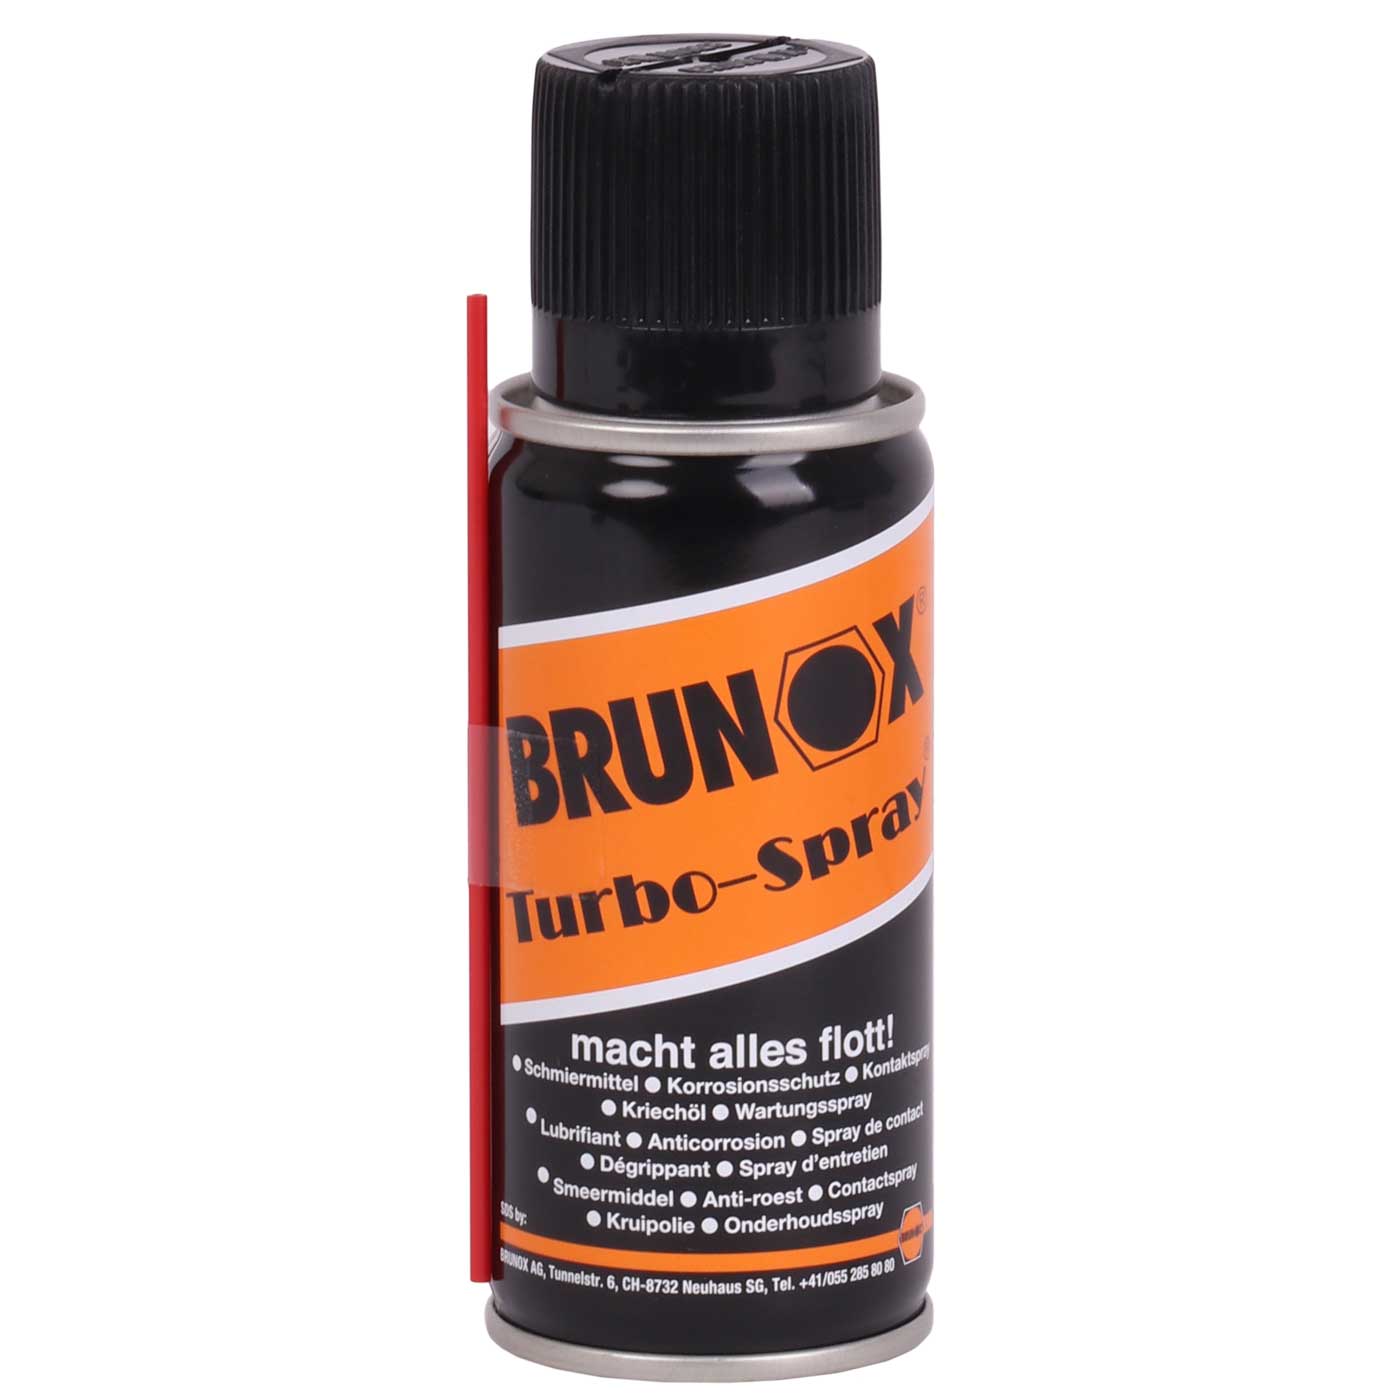 Productfoto van Brunox Turbo-Spray 100ml